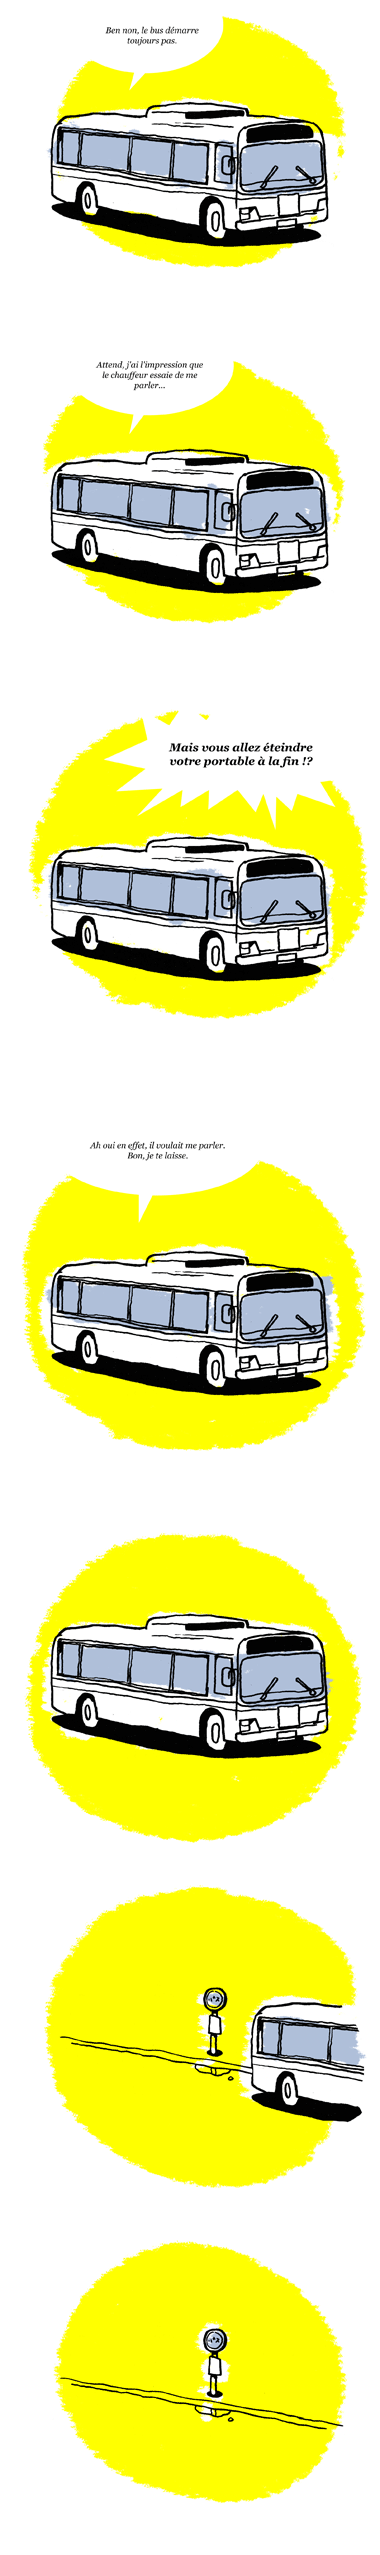 bus-03